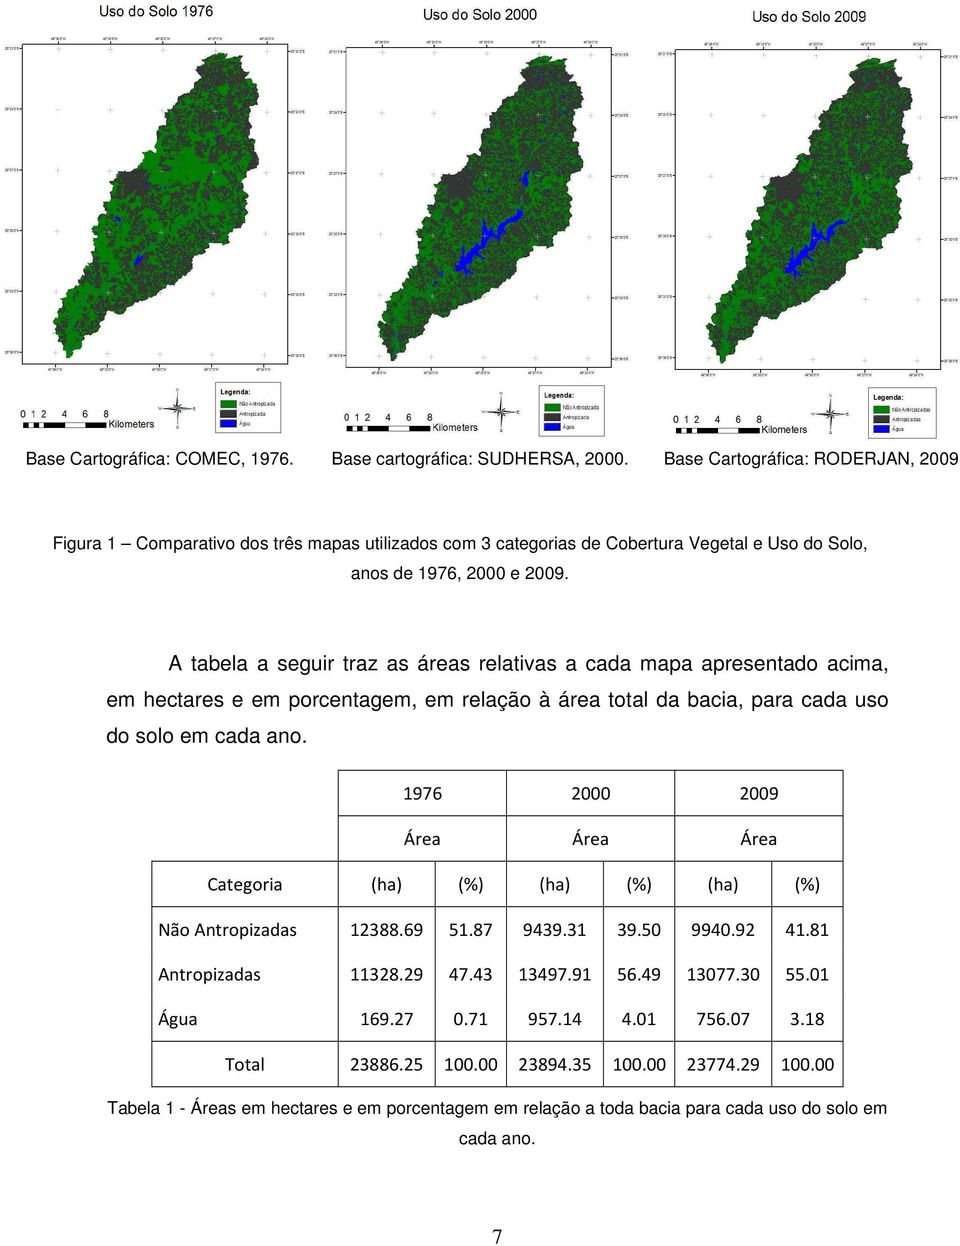 A tabela a seguir traz as áreas relativas a cada mapa apresentado acima, em hectares e em porcentagem, em relação à área total da bacia, para cada uso do solo em cada ano.